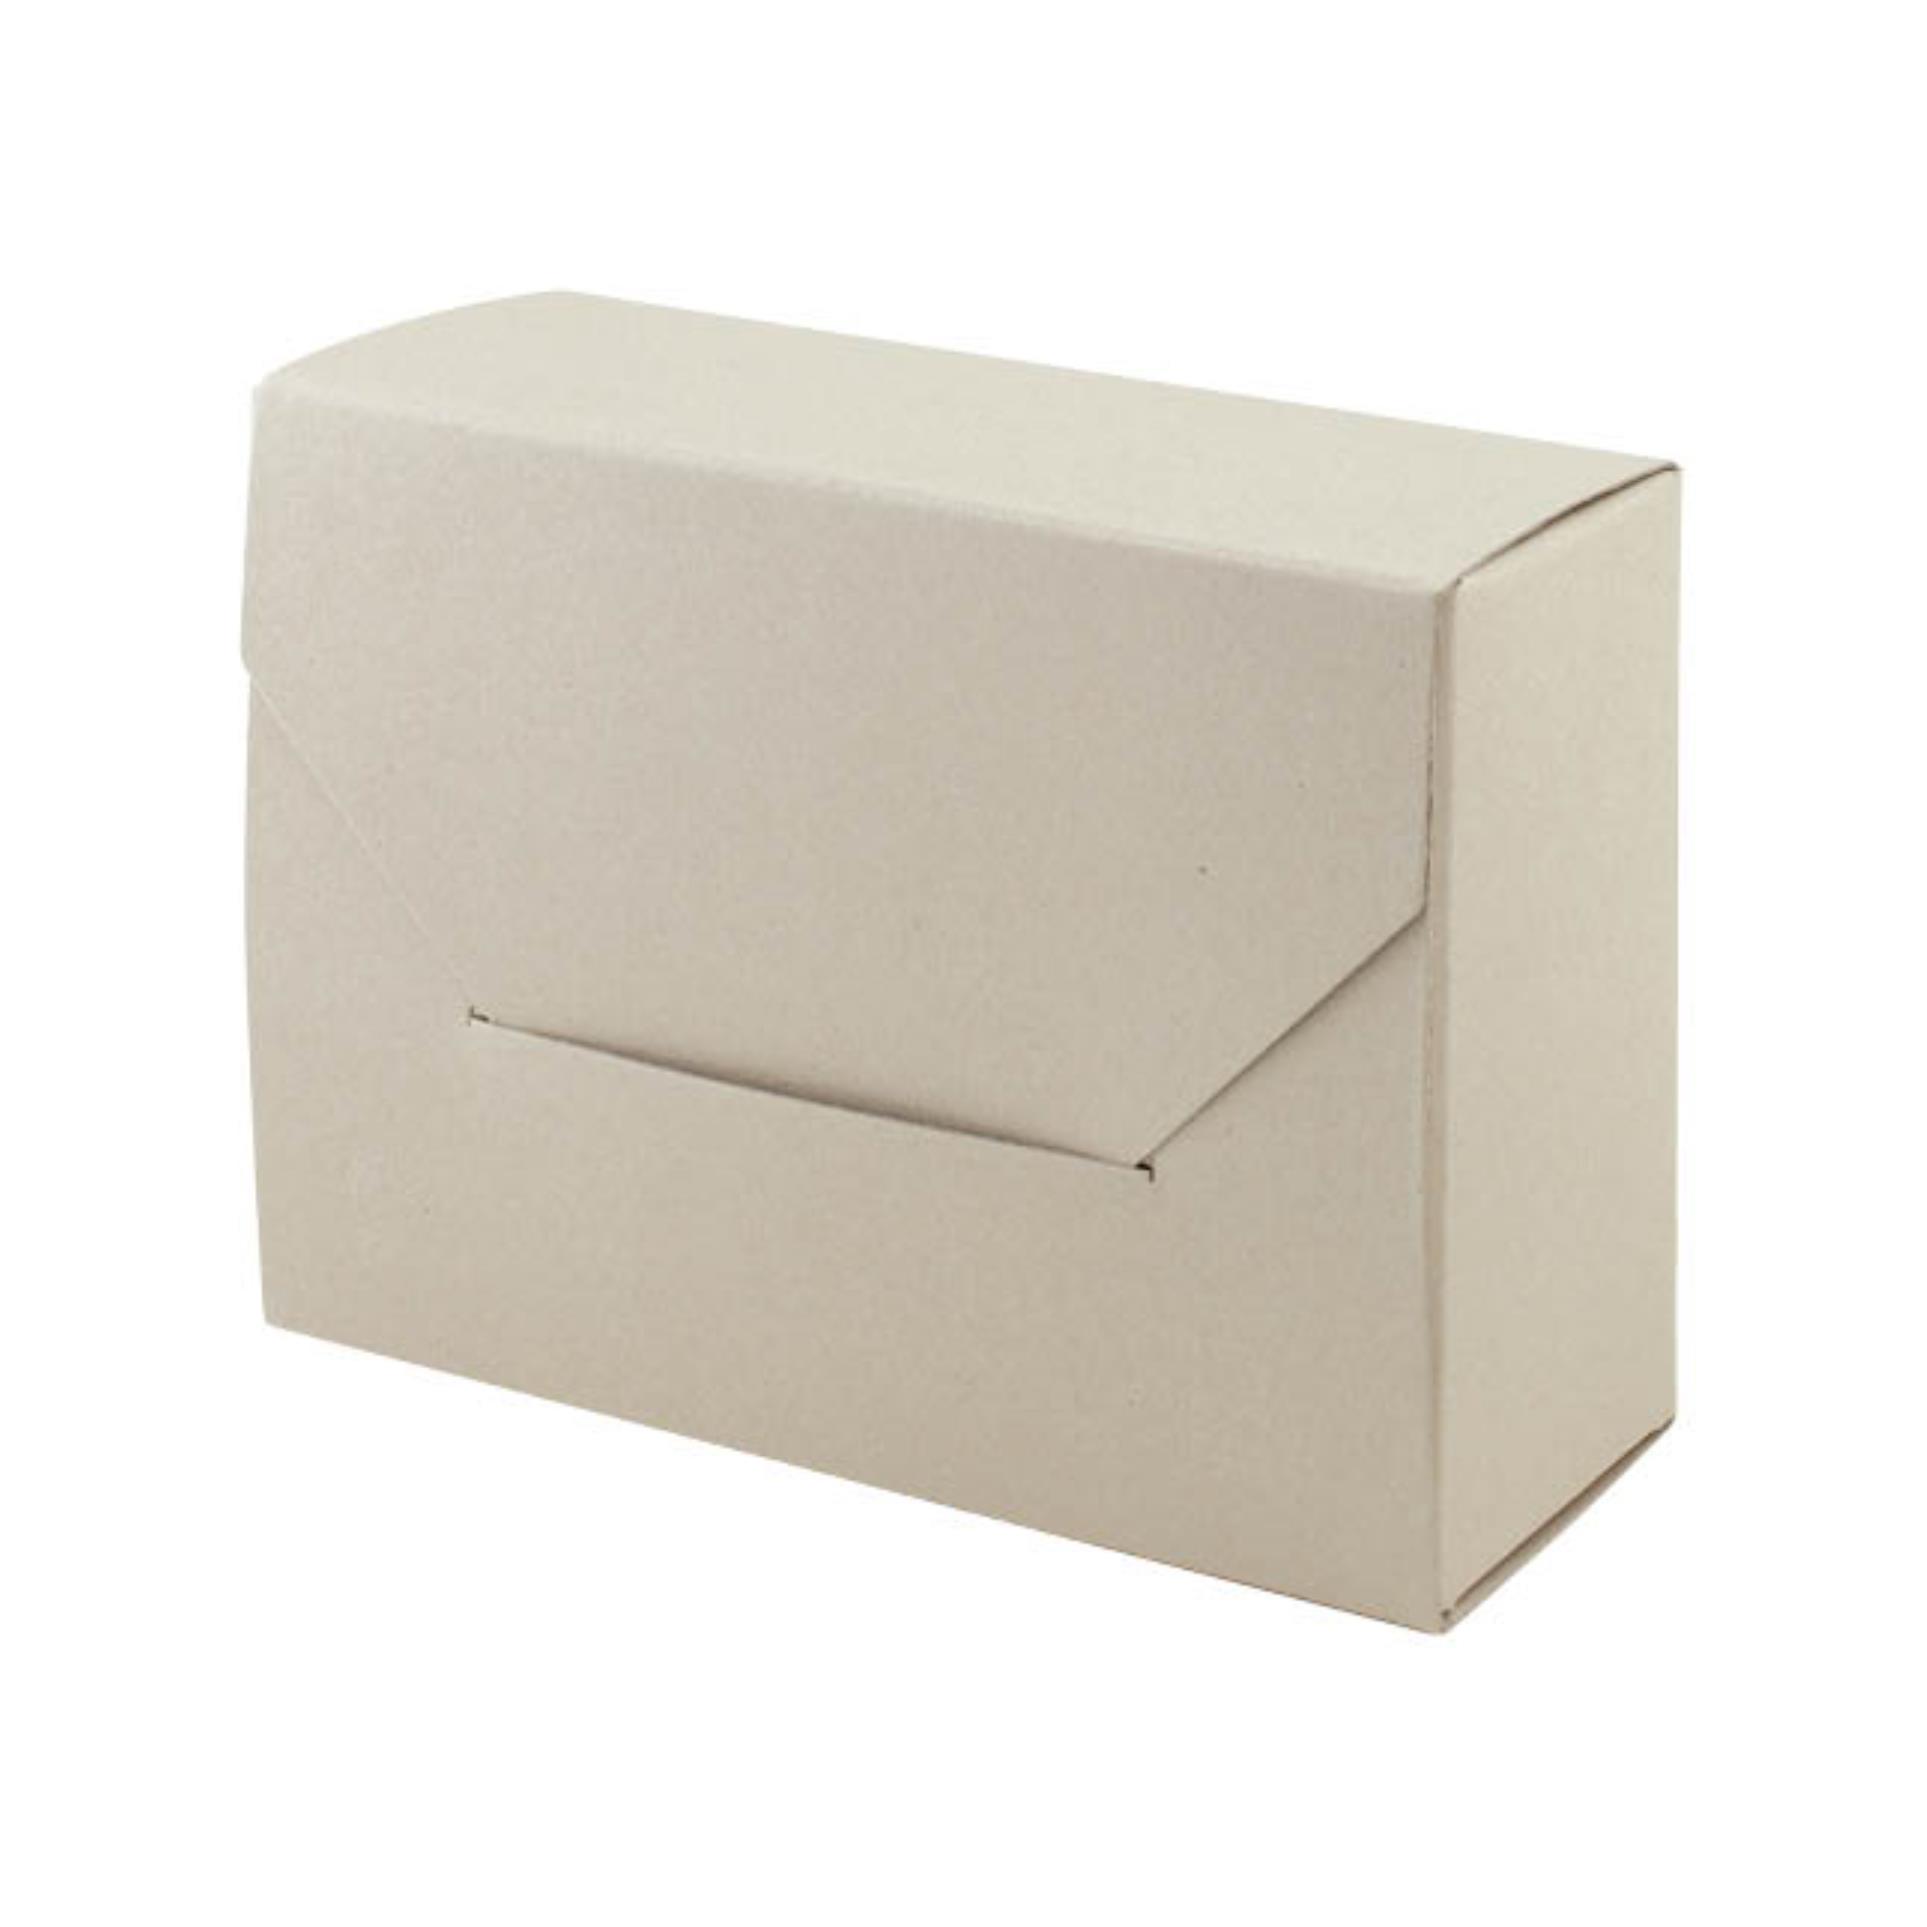 Archivní krabice Emba - přírodní, 11 x 45 x 32 cm